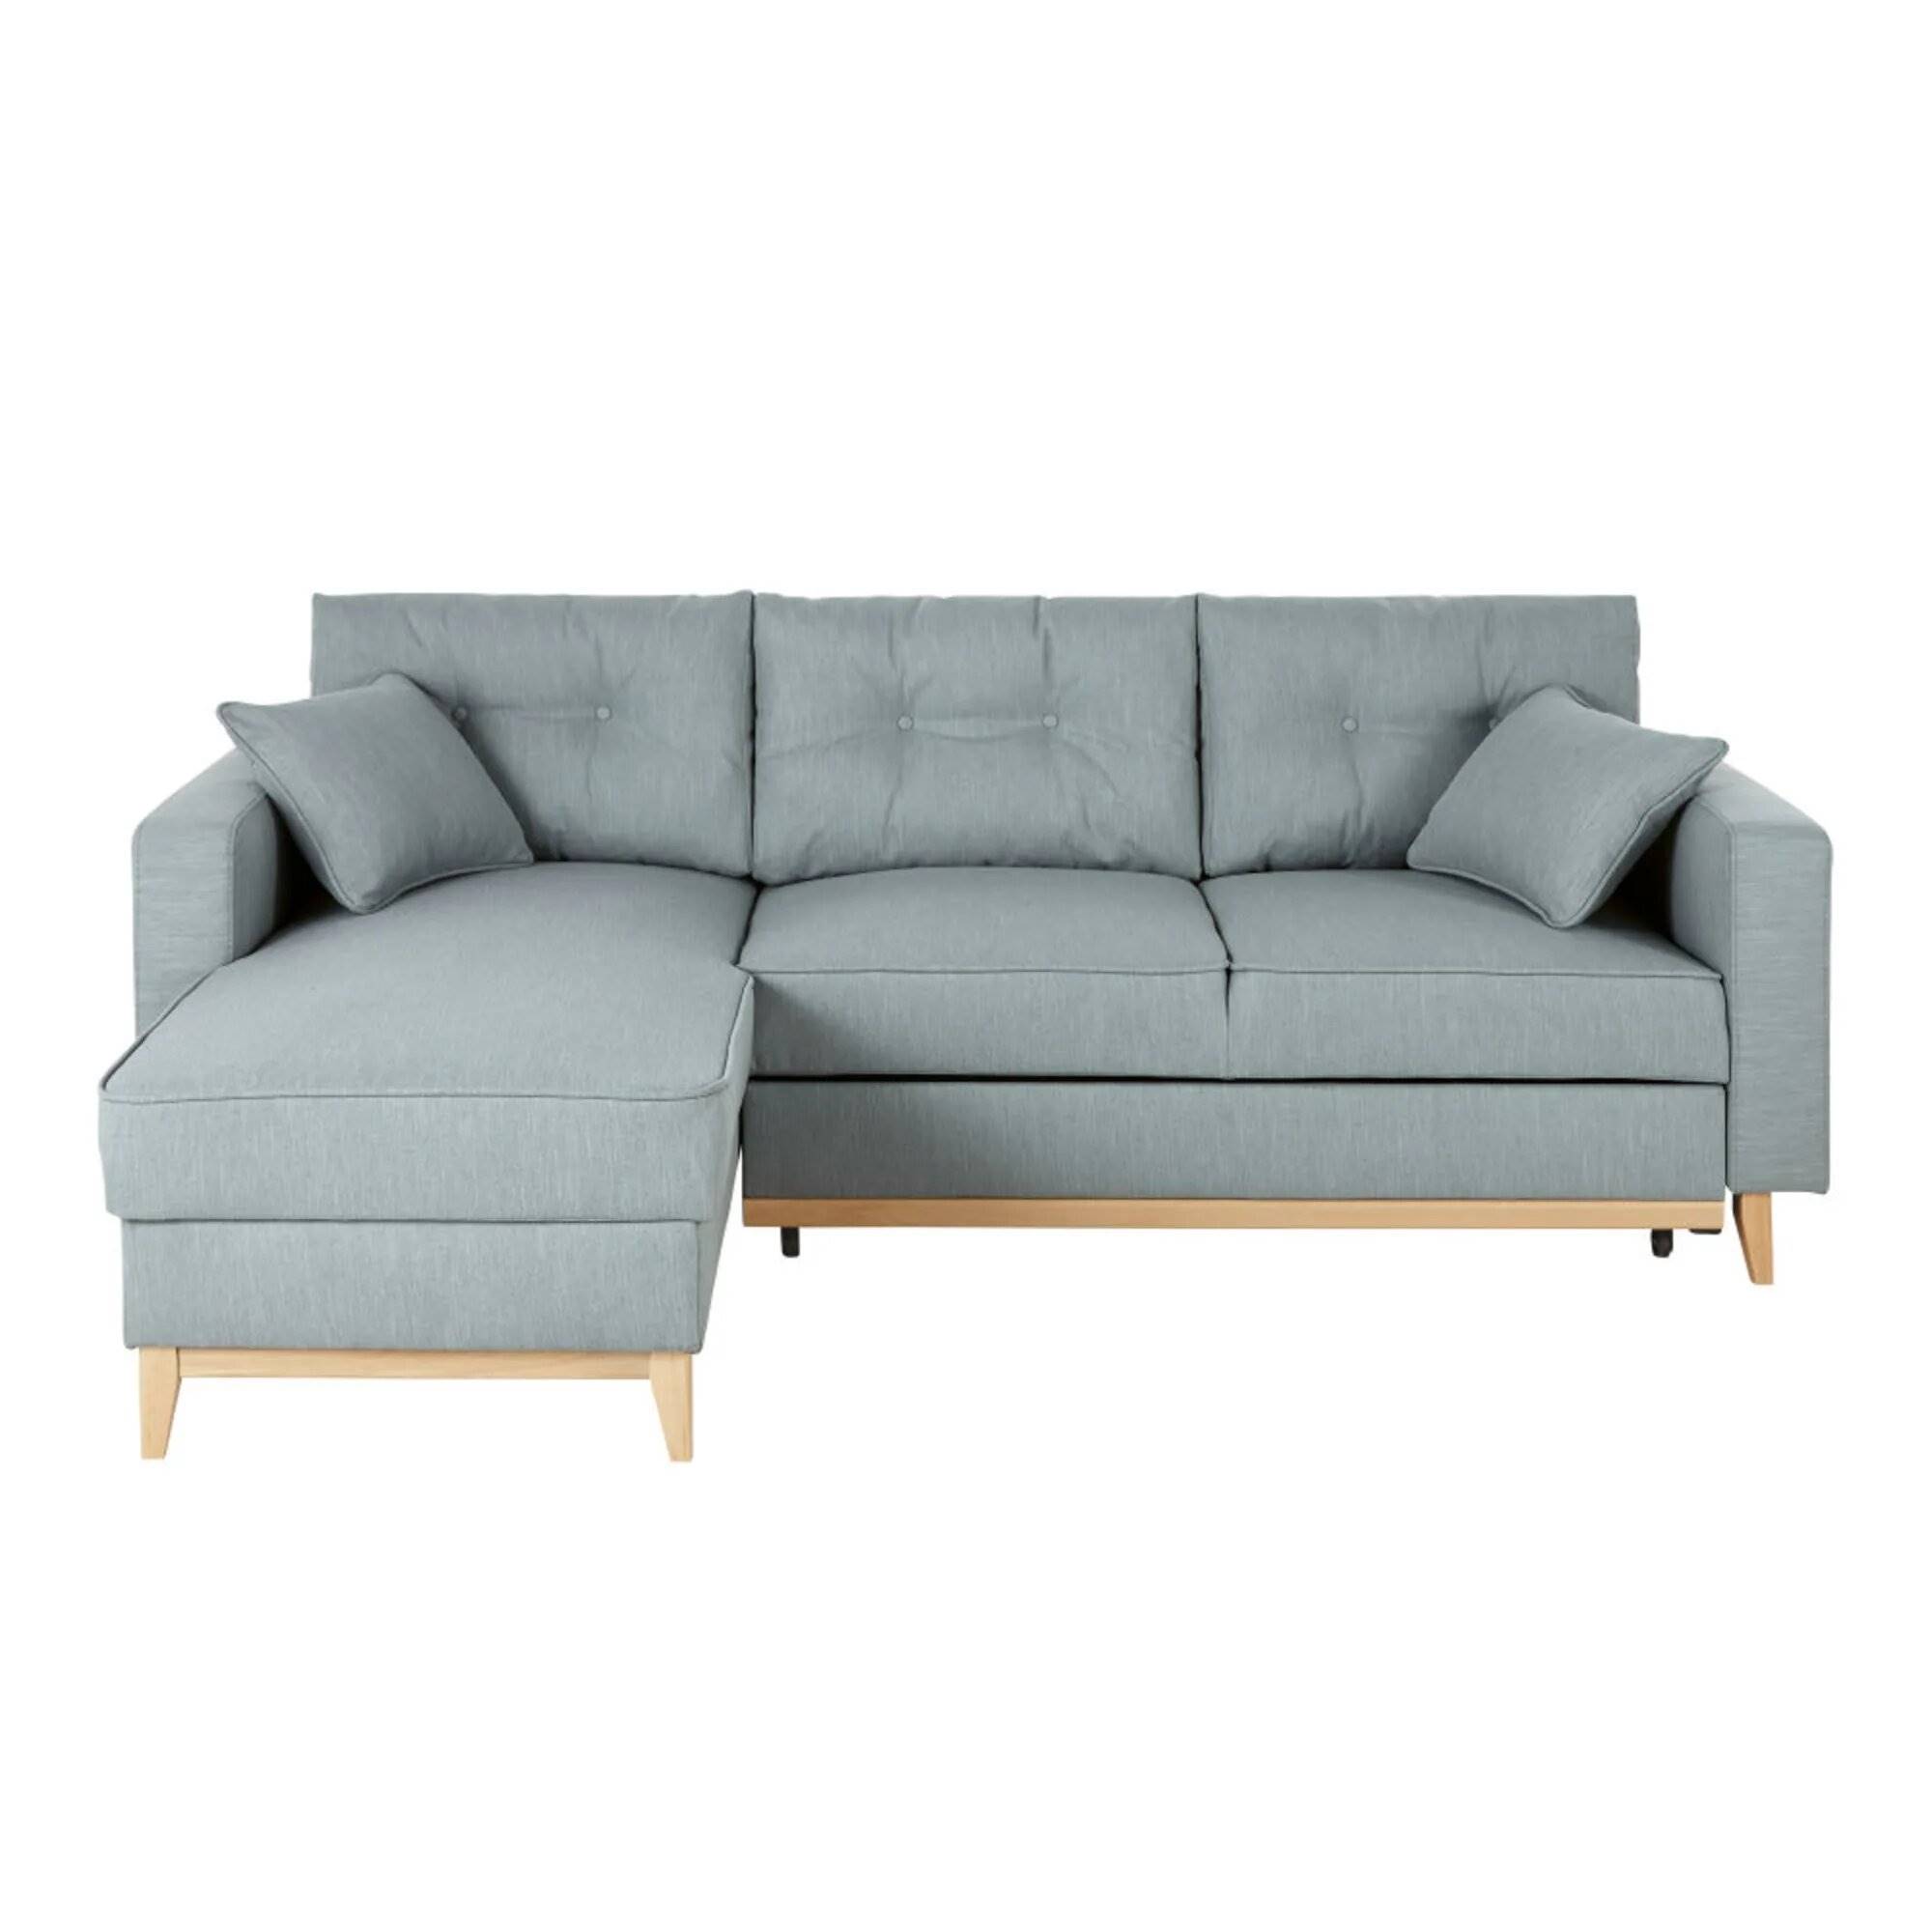 sofa-cama-esquinero-de-4-5-plazas-azul-glaciar-mdm